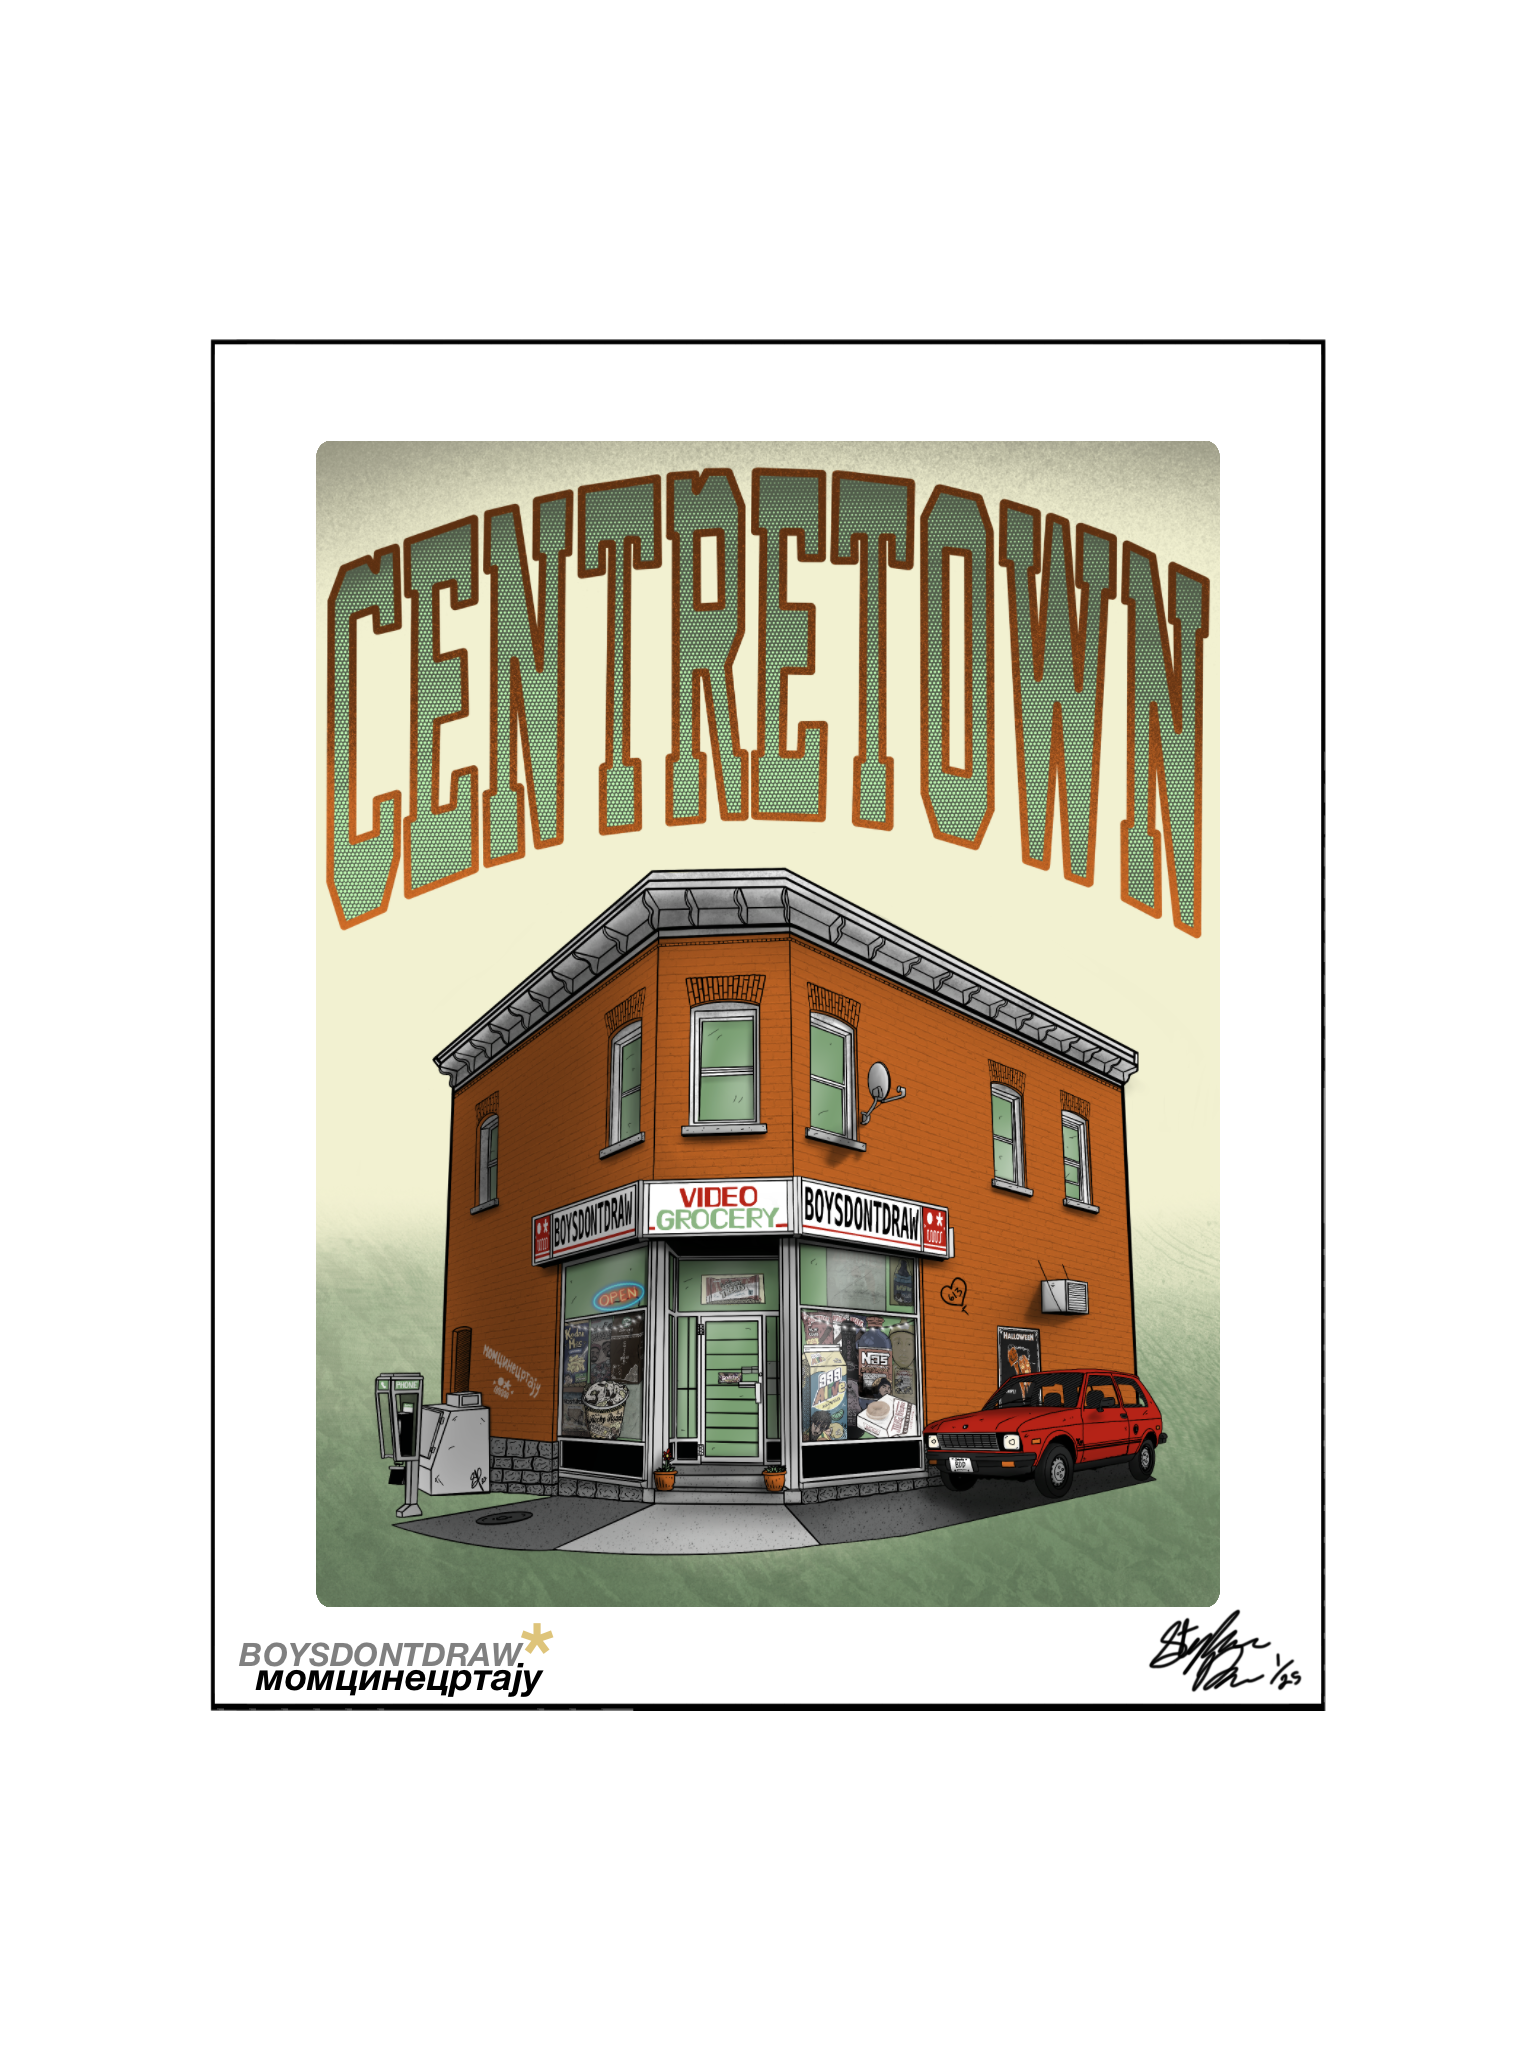 CENTRETOWN* // OTTAWA - Limited Print by BOYSDONTDRAW